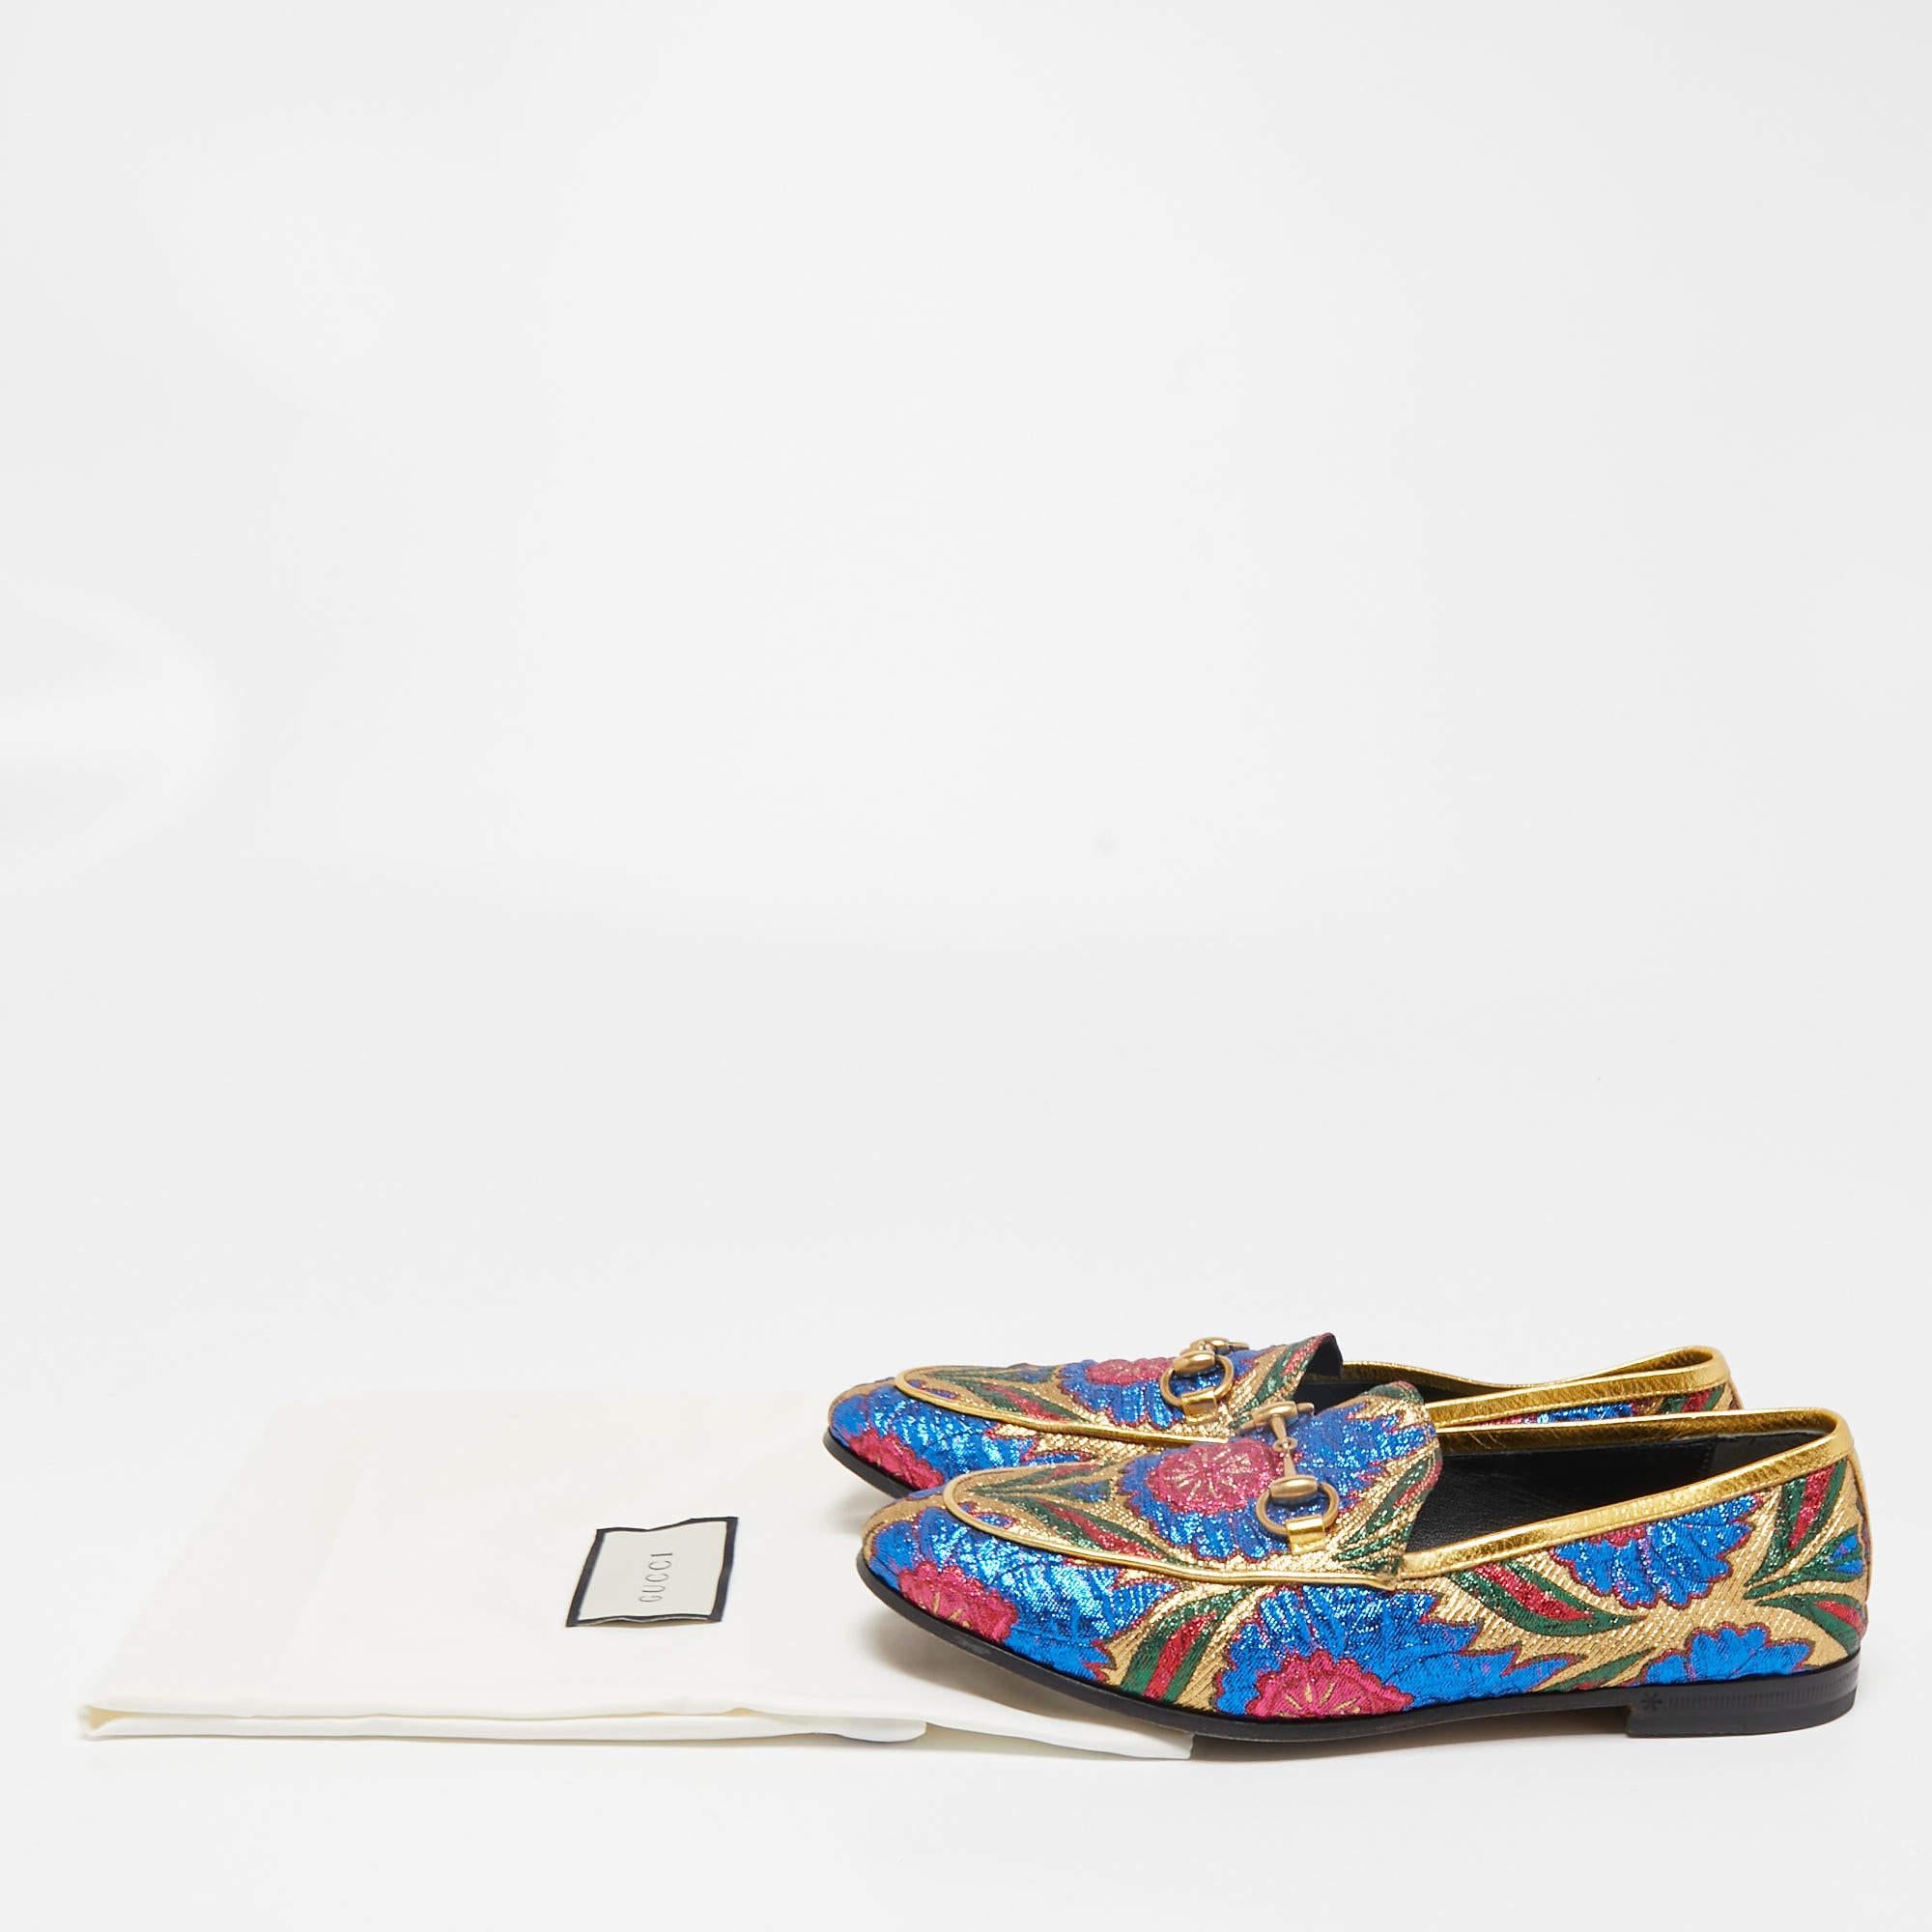 Gucci Multicolor Brocade Fabric Jordaan Loafers Size 35.5 5